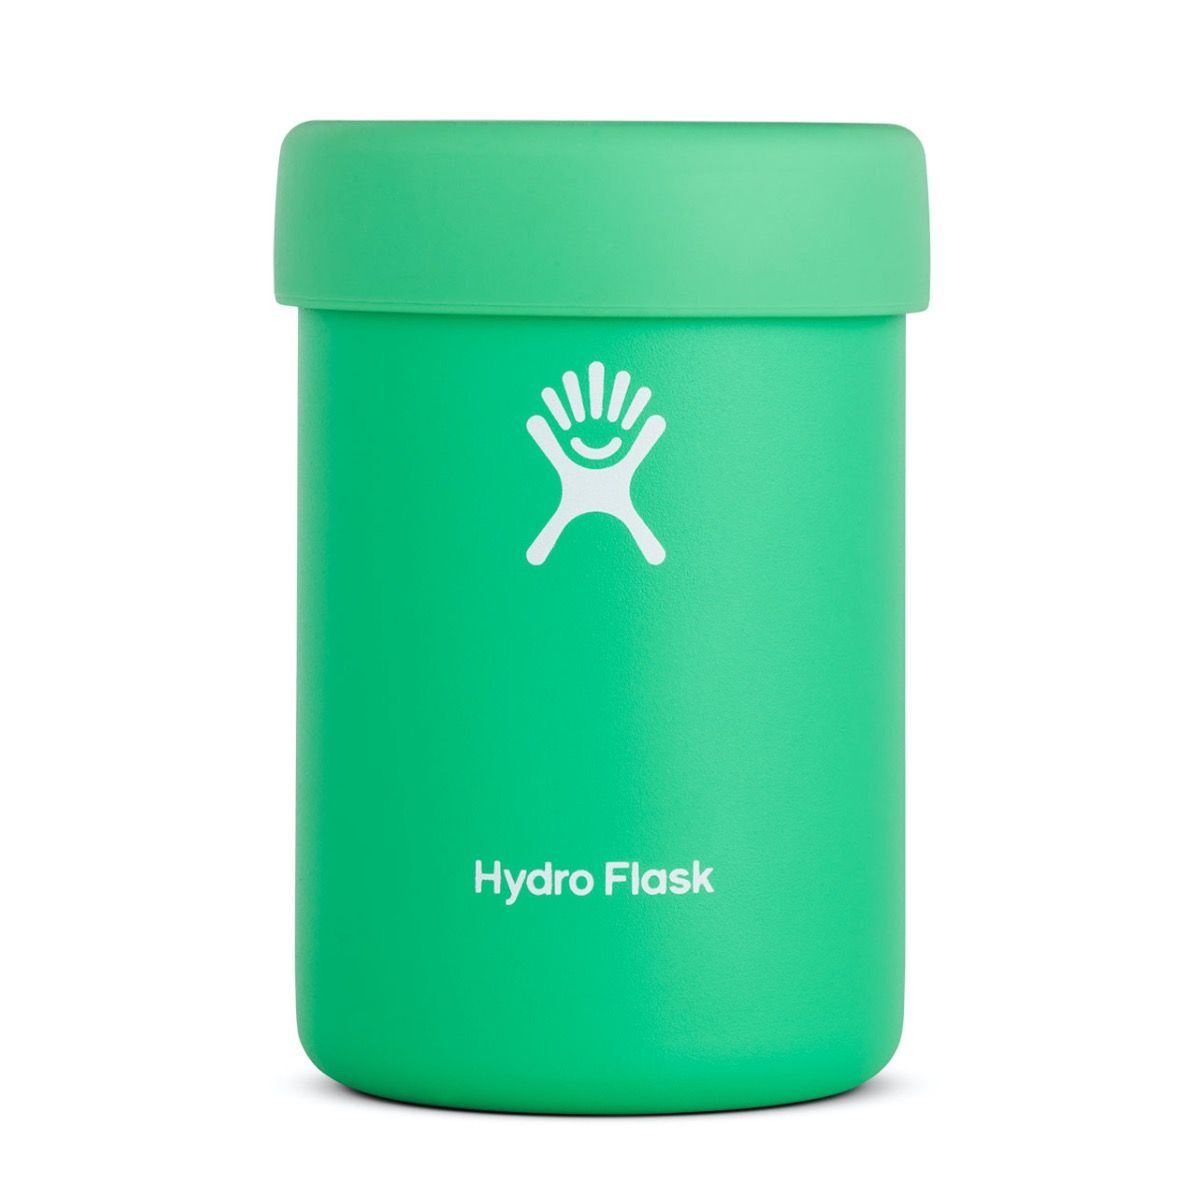 hydro flask 12 oz